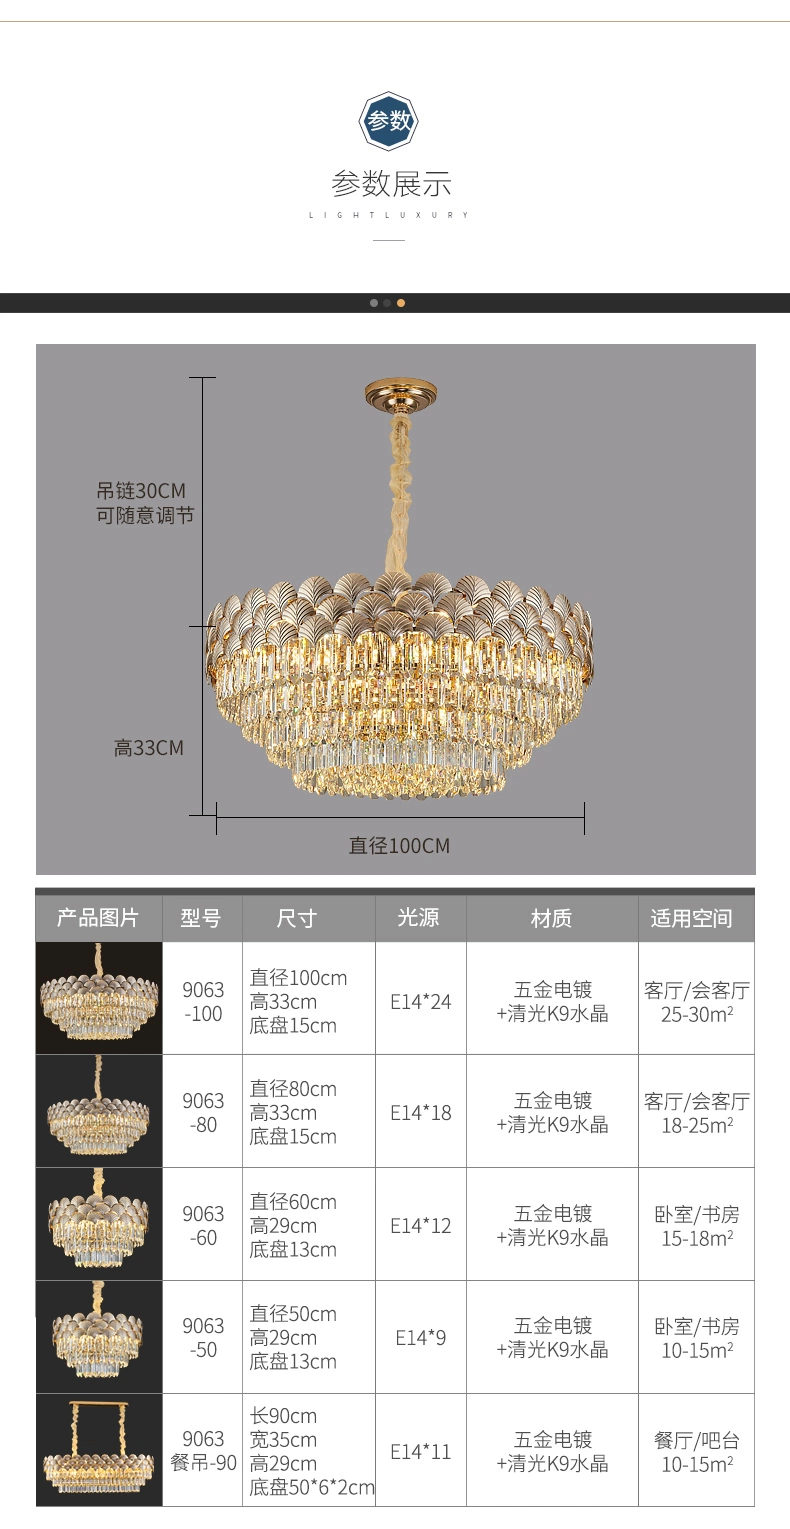 Kristall Anhänger Kronleuchter Günstige Preis China Kostengünstige Klassische Kronleuchter Kronleuchter Zum Abendessen Moderner Luxus-Kristallleuchter